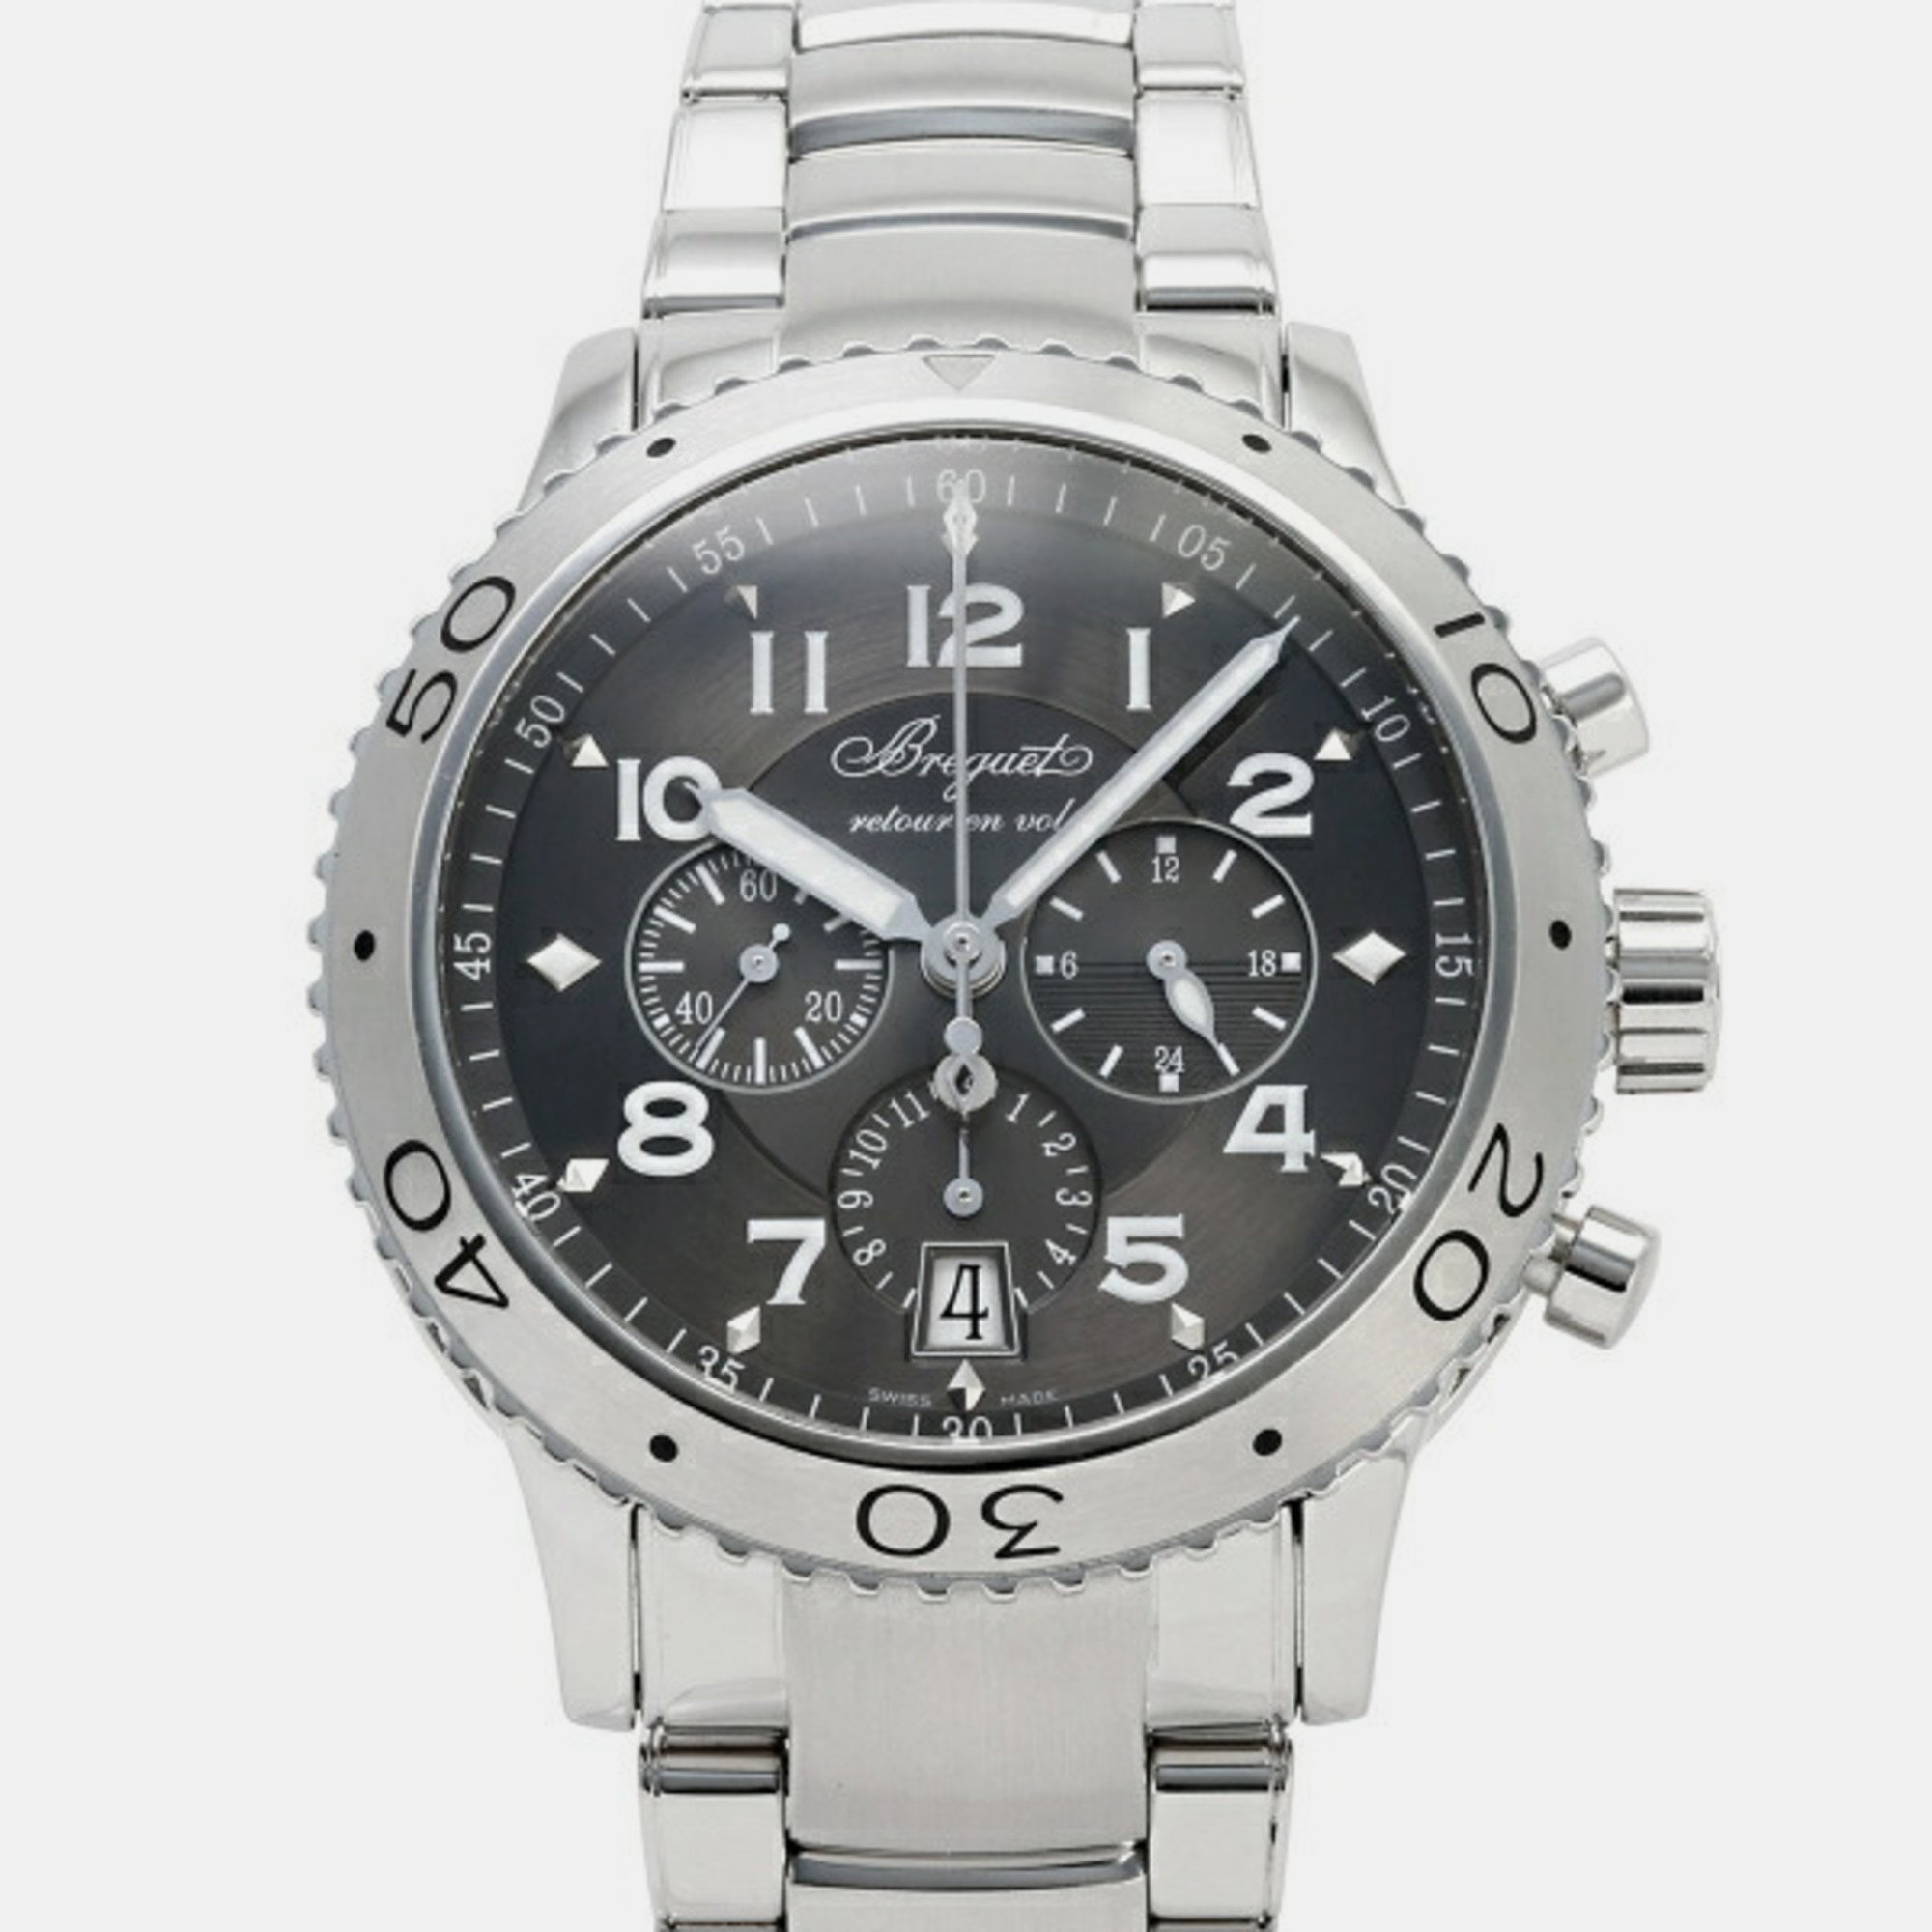 Breguet gray stainless steel type xxi 3810st men's wristwatch 42mm